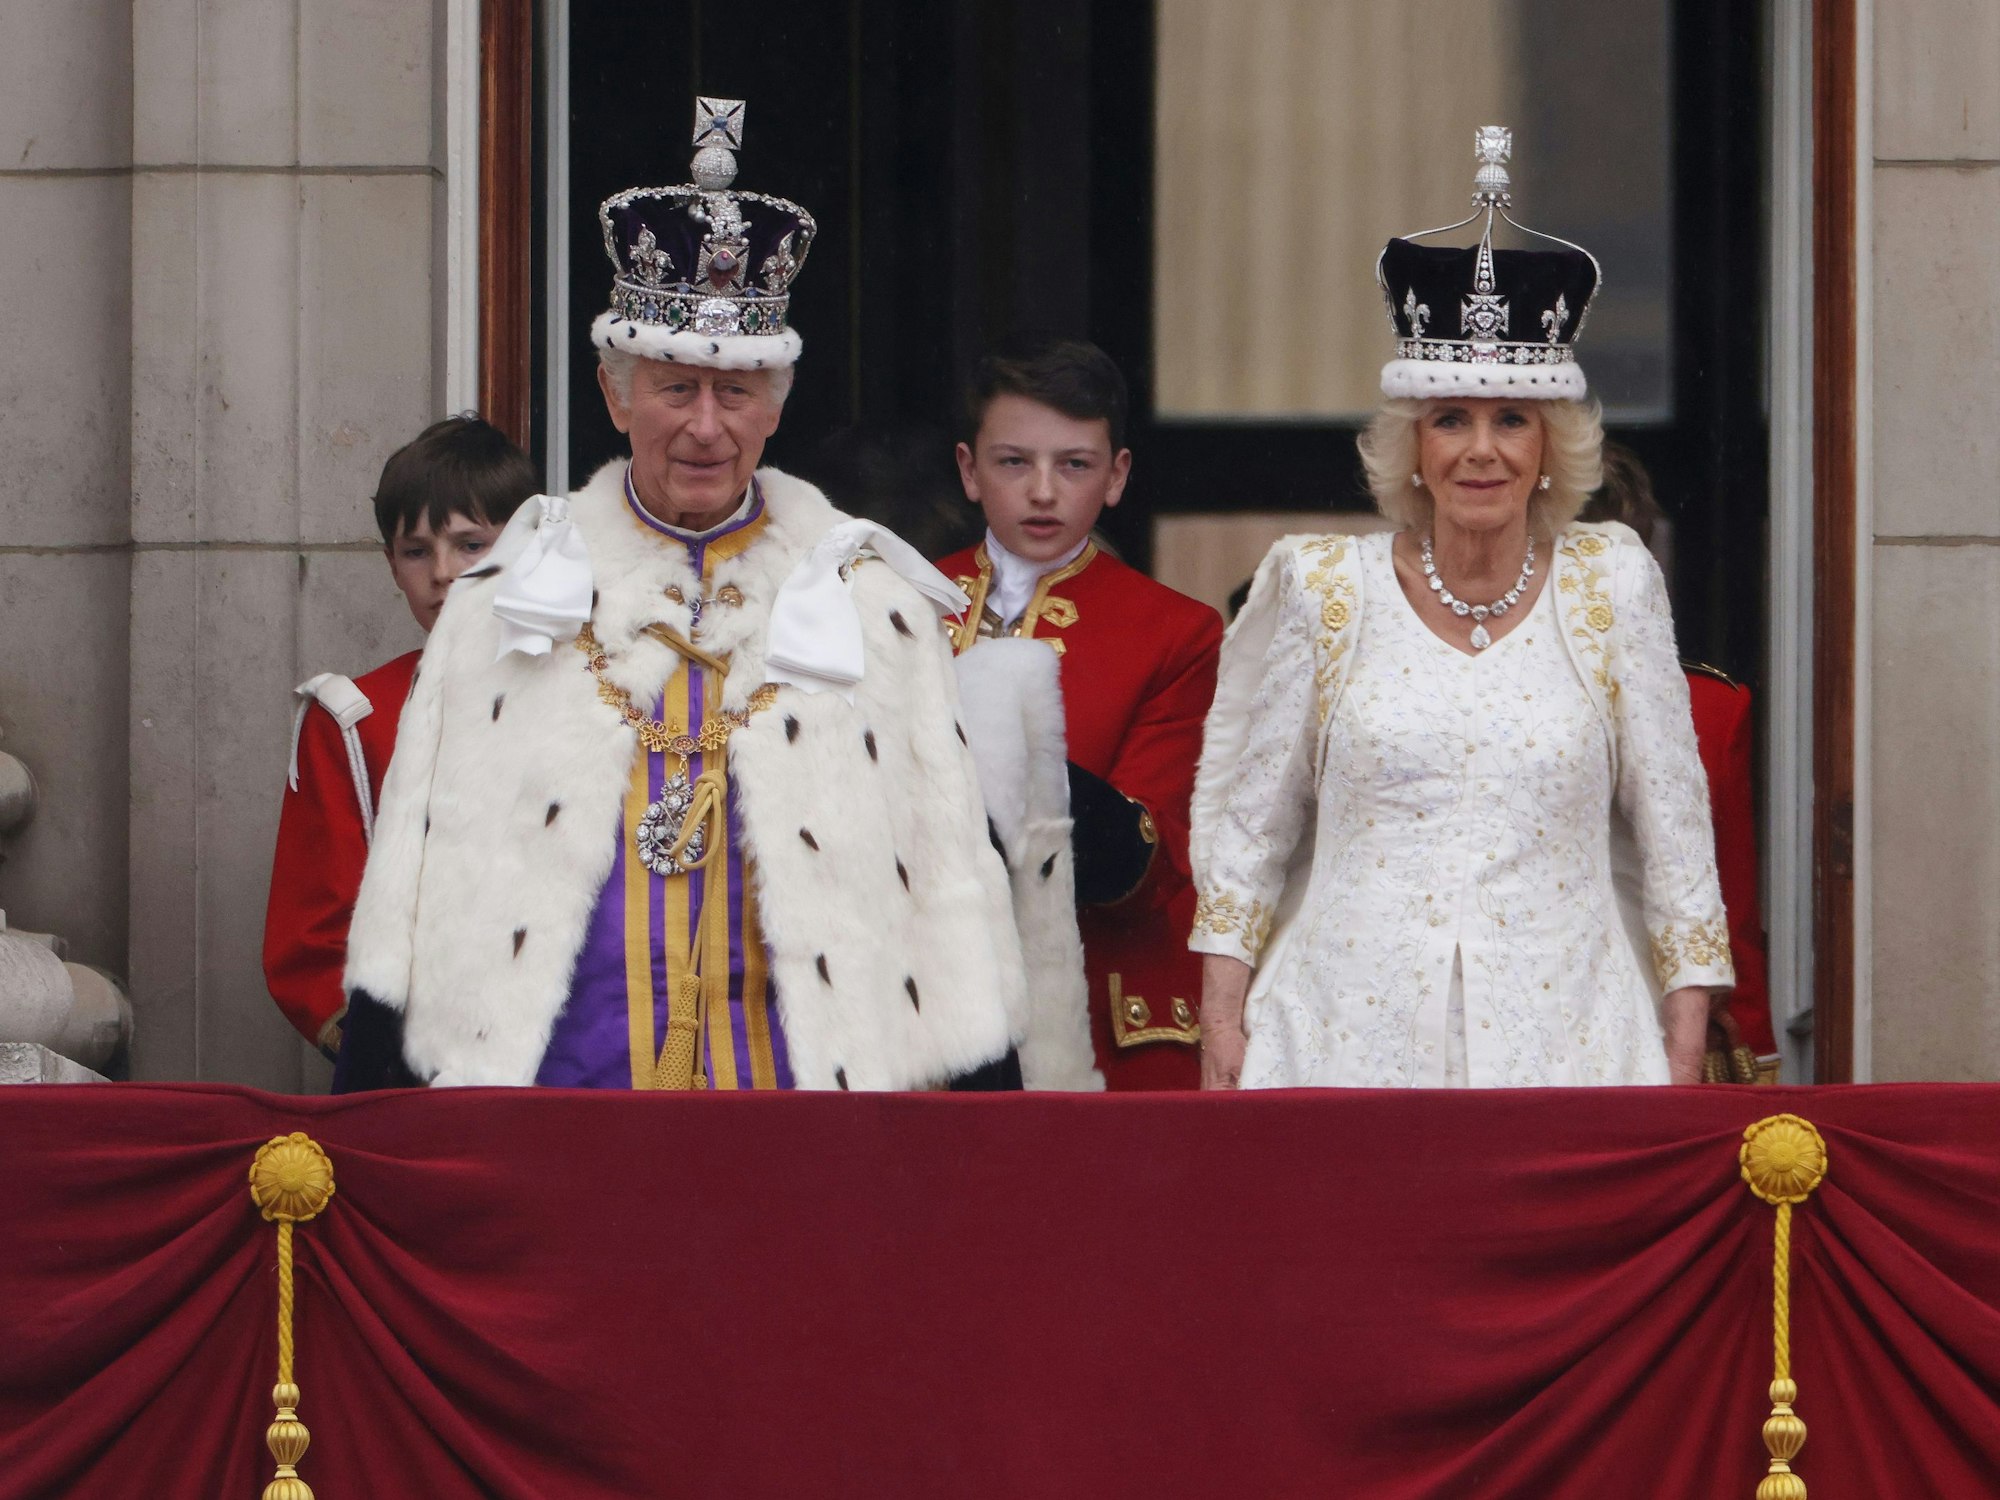 König Charles III. und Königin Camilla zeigen sich nach der Krönung auf dem Balkon des Buckingham-Palasts.